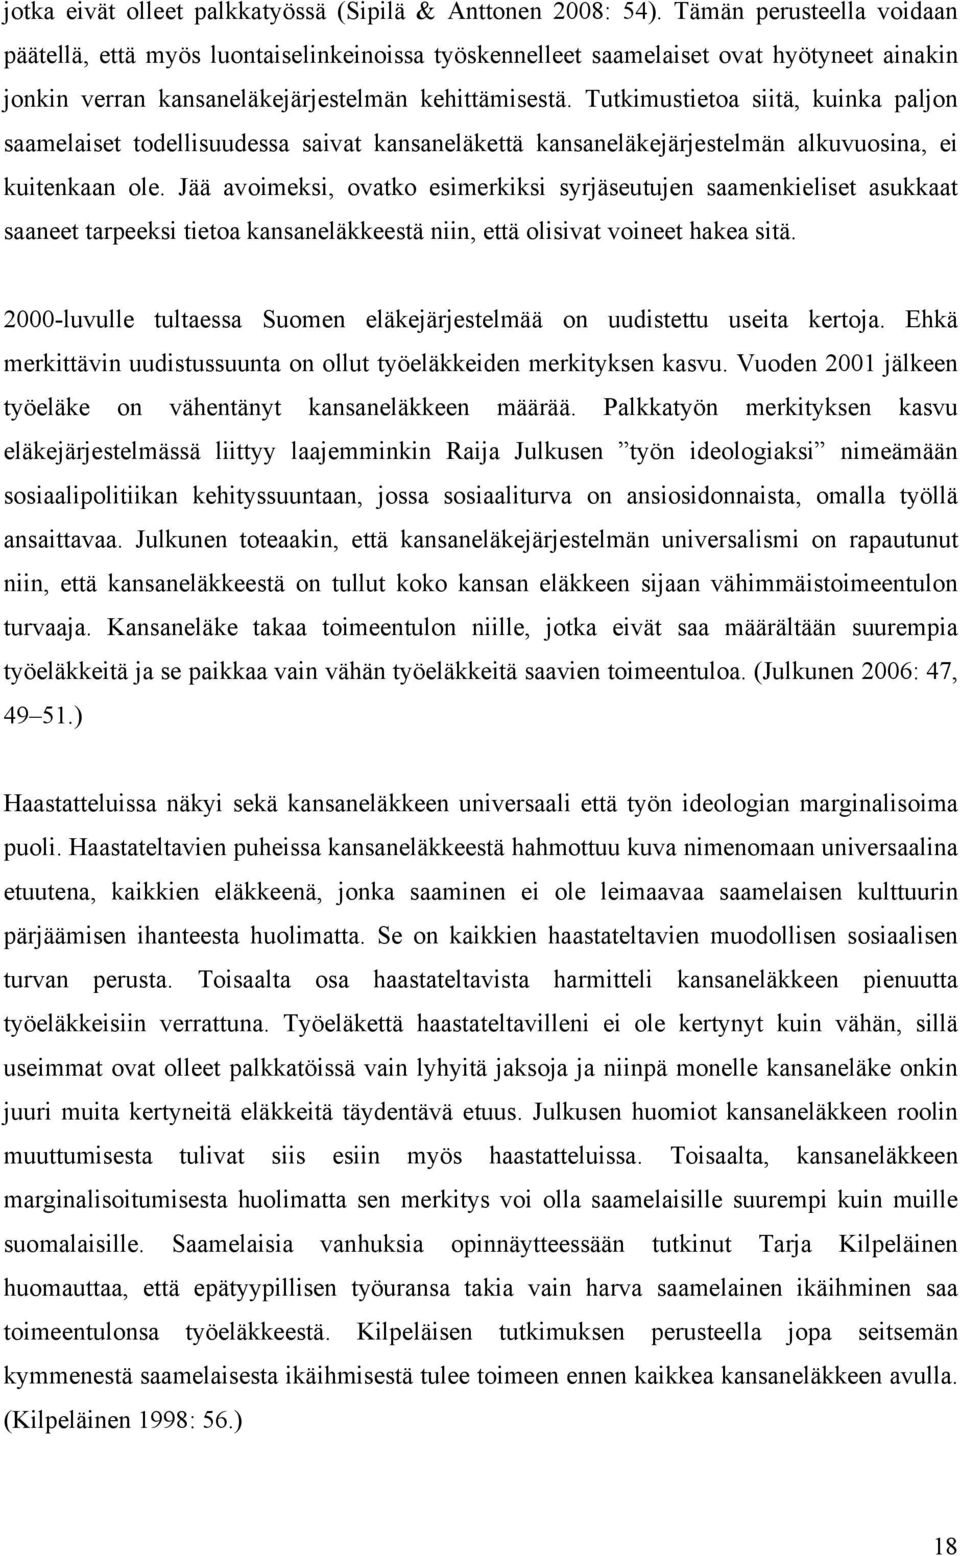 Tutkimustietoa siitä, kuinka paljon saamelaiset todellisuudessa saivat kansaneläkettä kansaneläkejärjestelmän alkuvuosina, ei kuitenkaan ole.